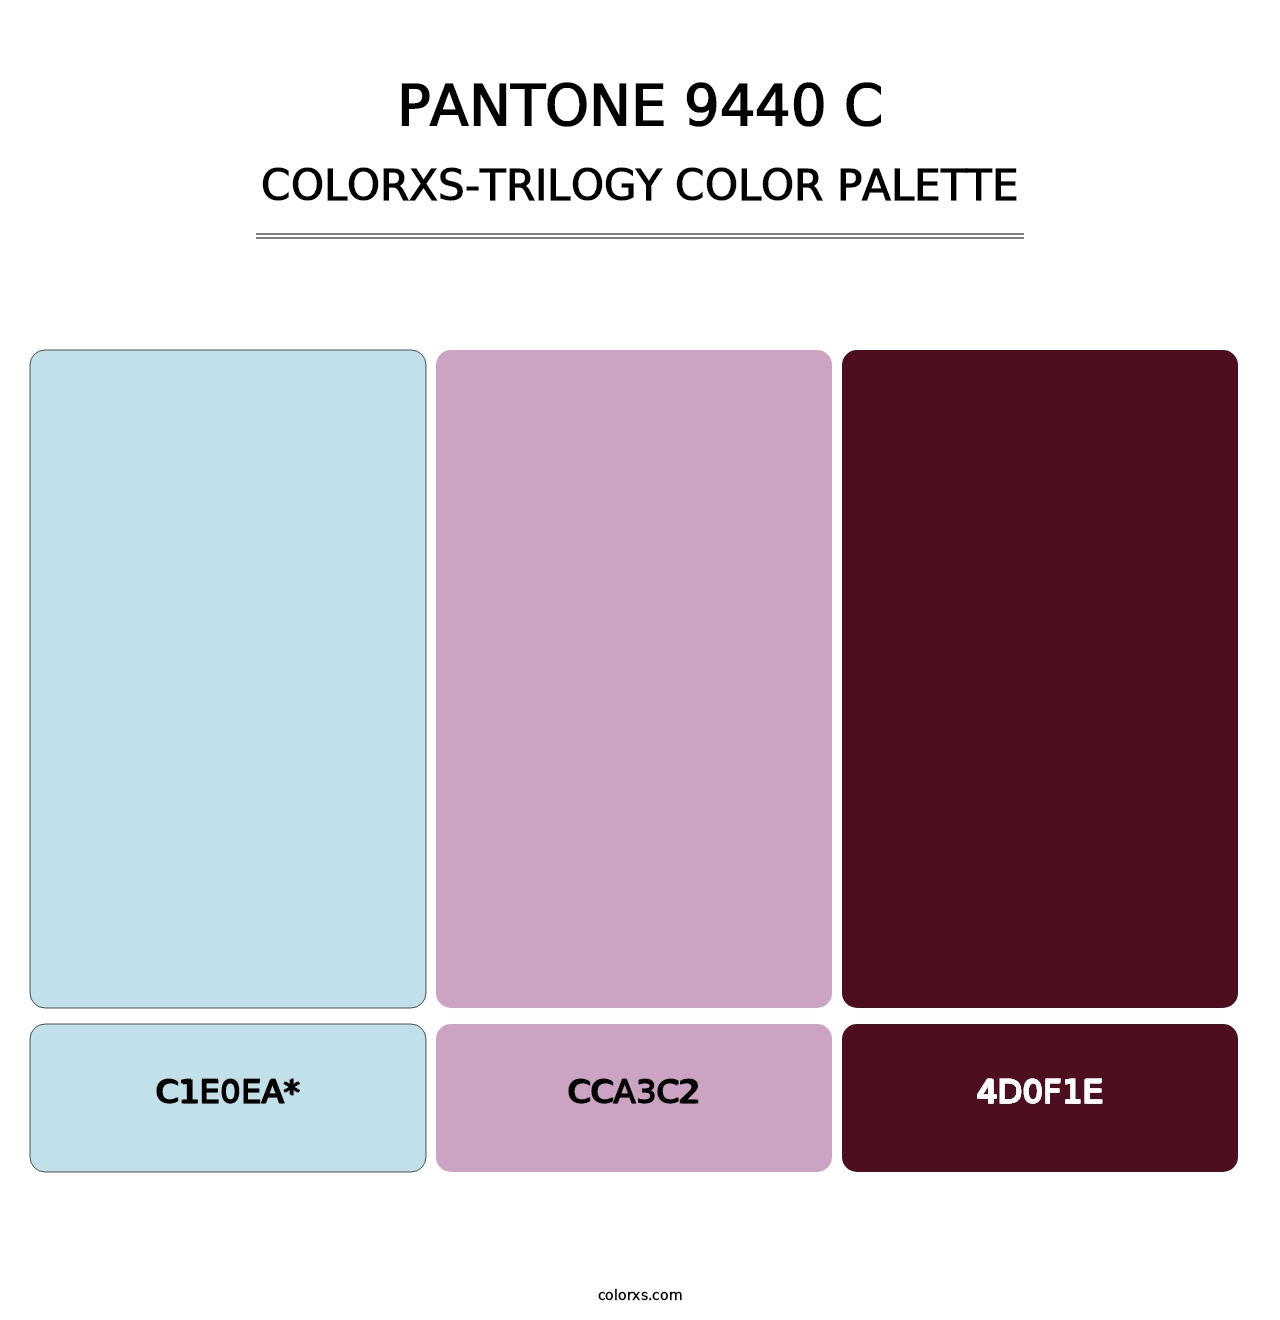 PANTONE 9440 C - Colorxs Trilogy Palette